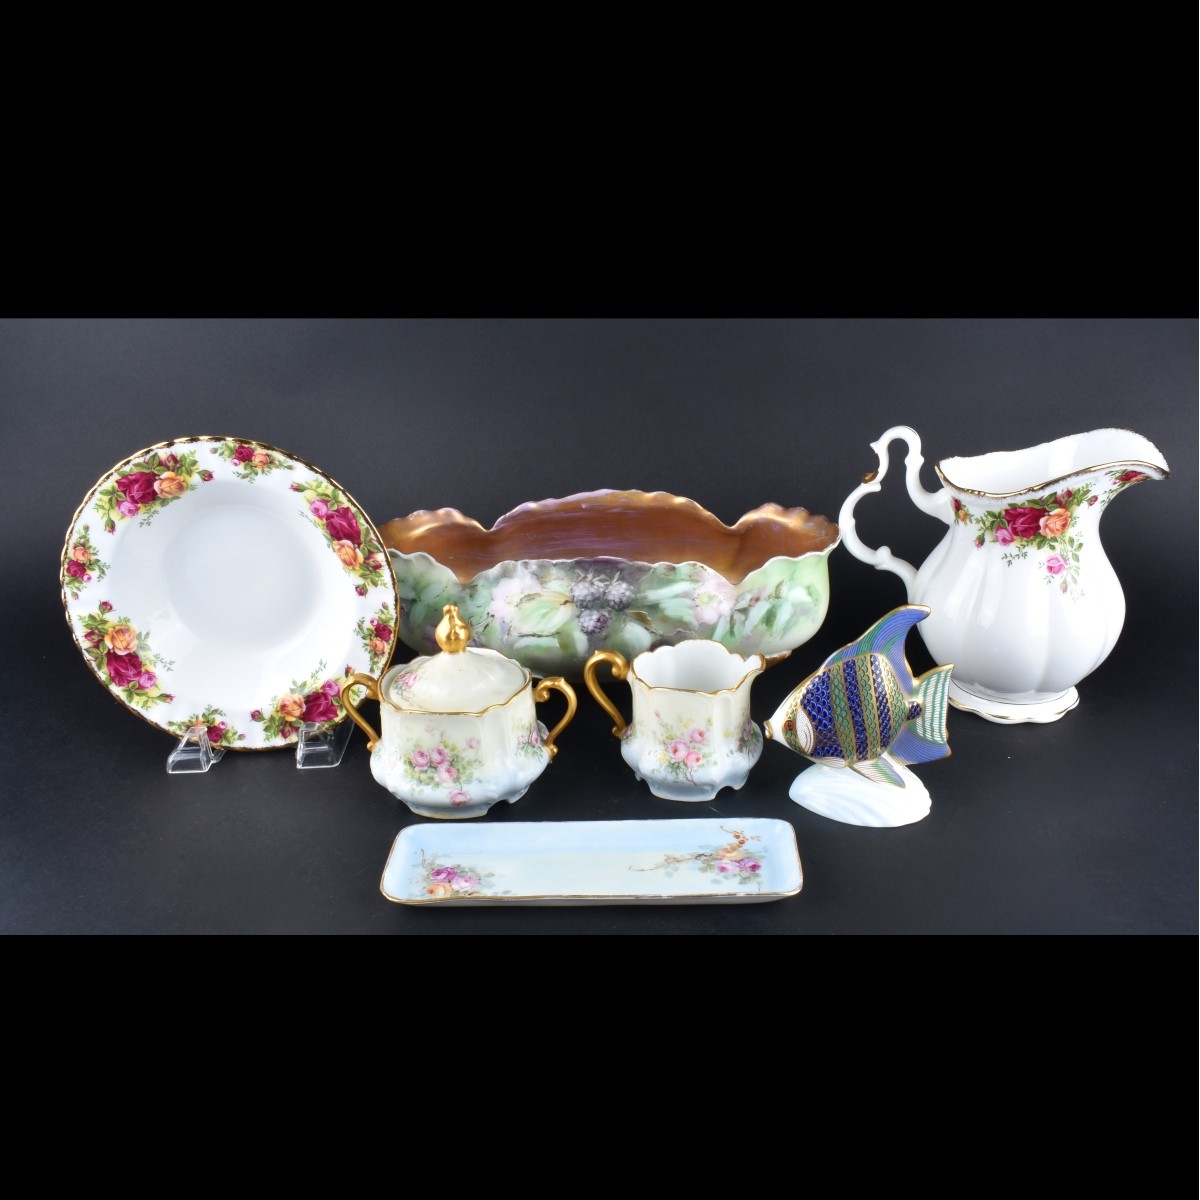 7 Pieces Decorative Porcelain